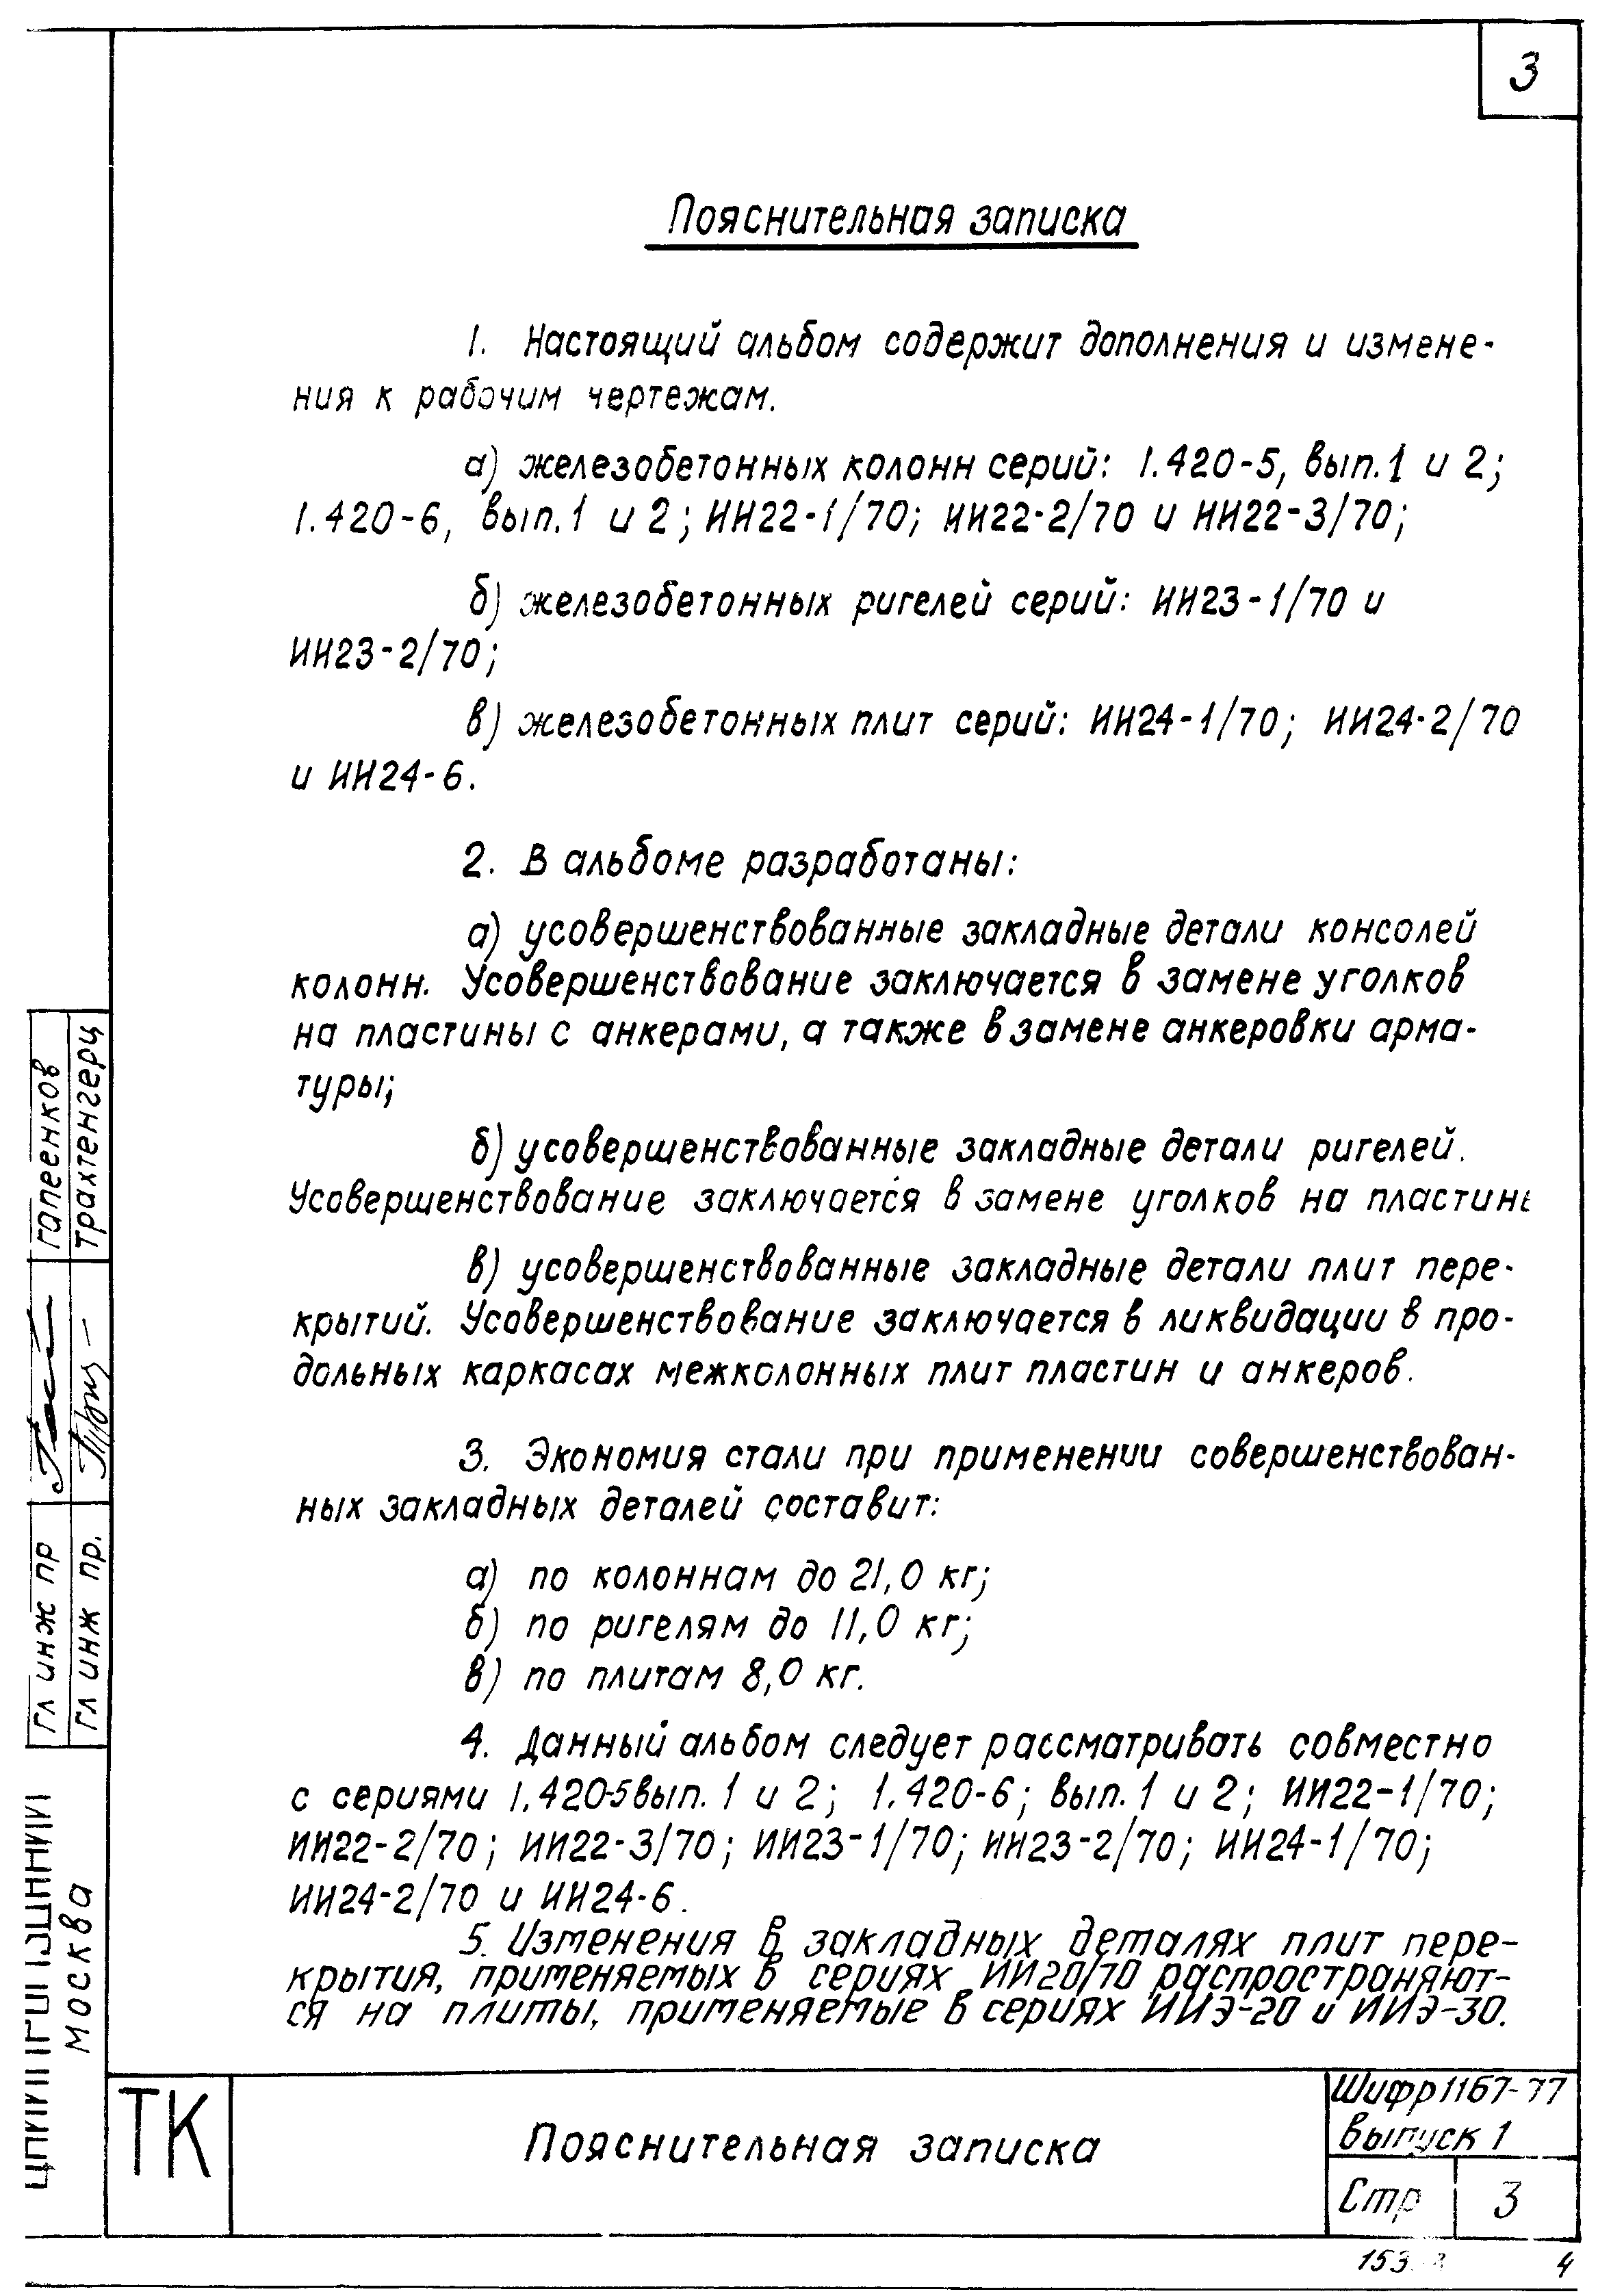 Шифр 1167-77